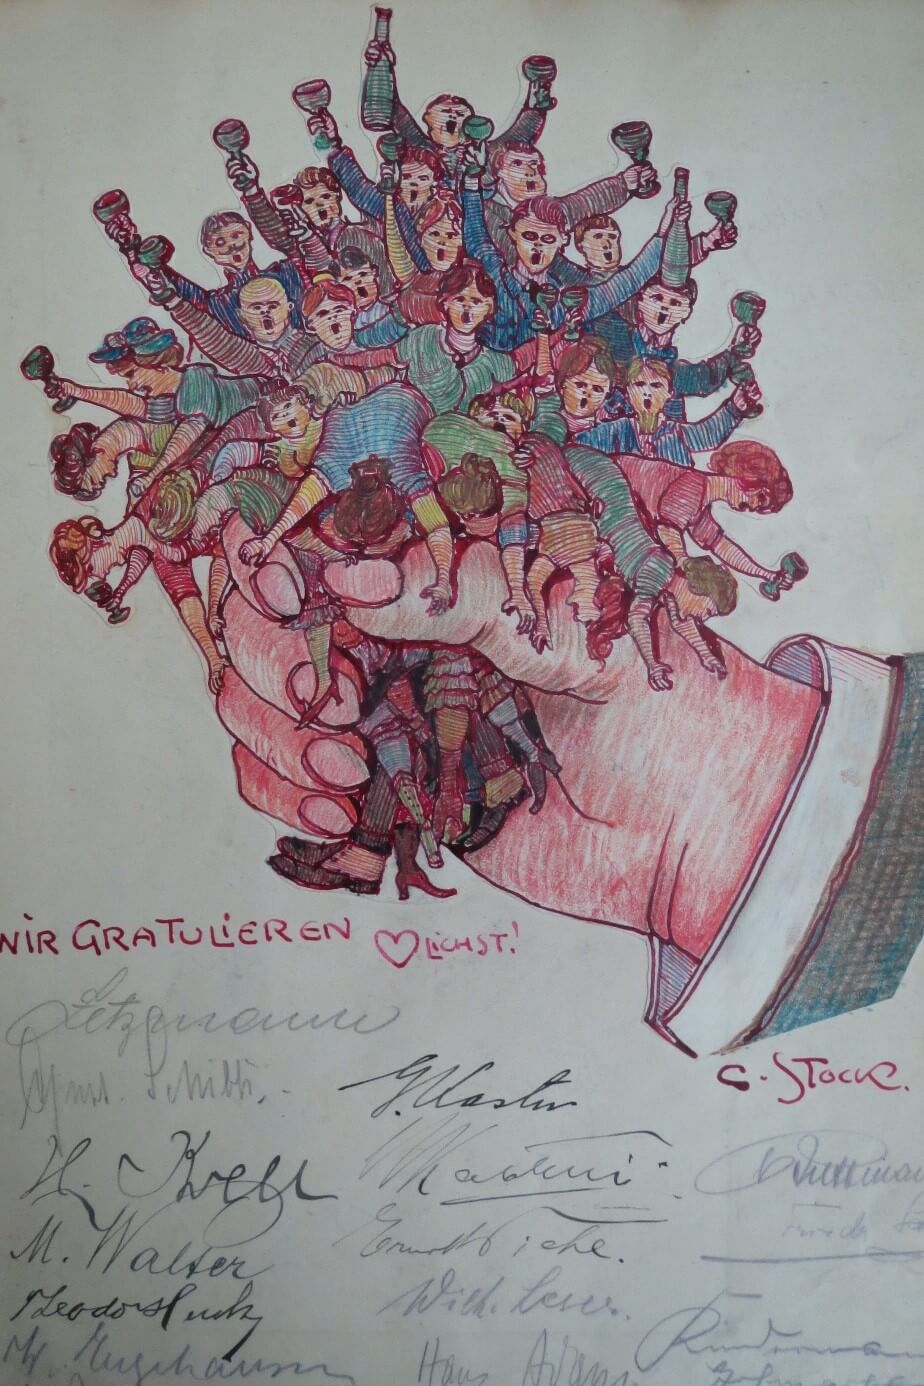 Blick ins Gästebuch 1921 – Zeichnung von Carl Stock zum 50. Geburtstag Wagenführs